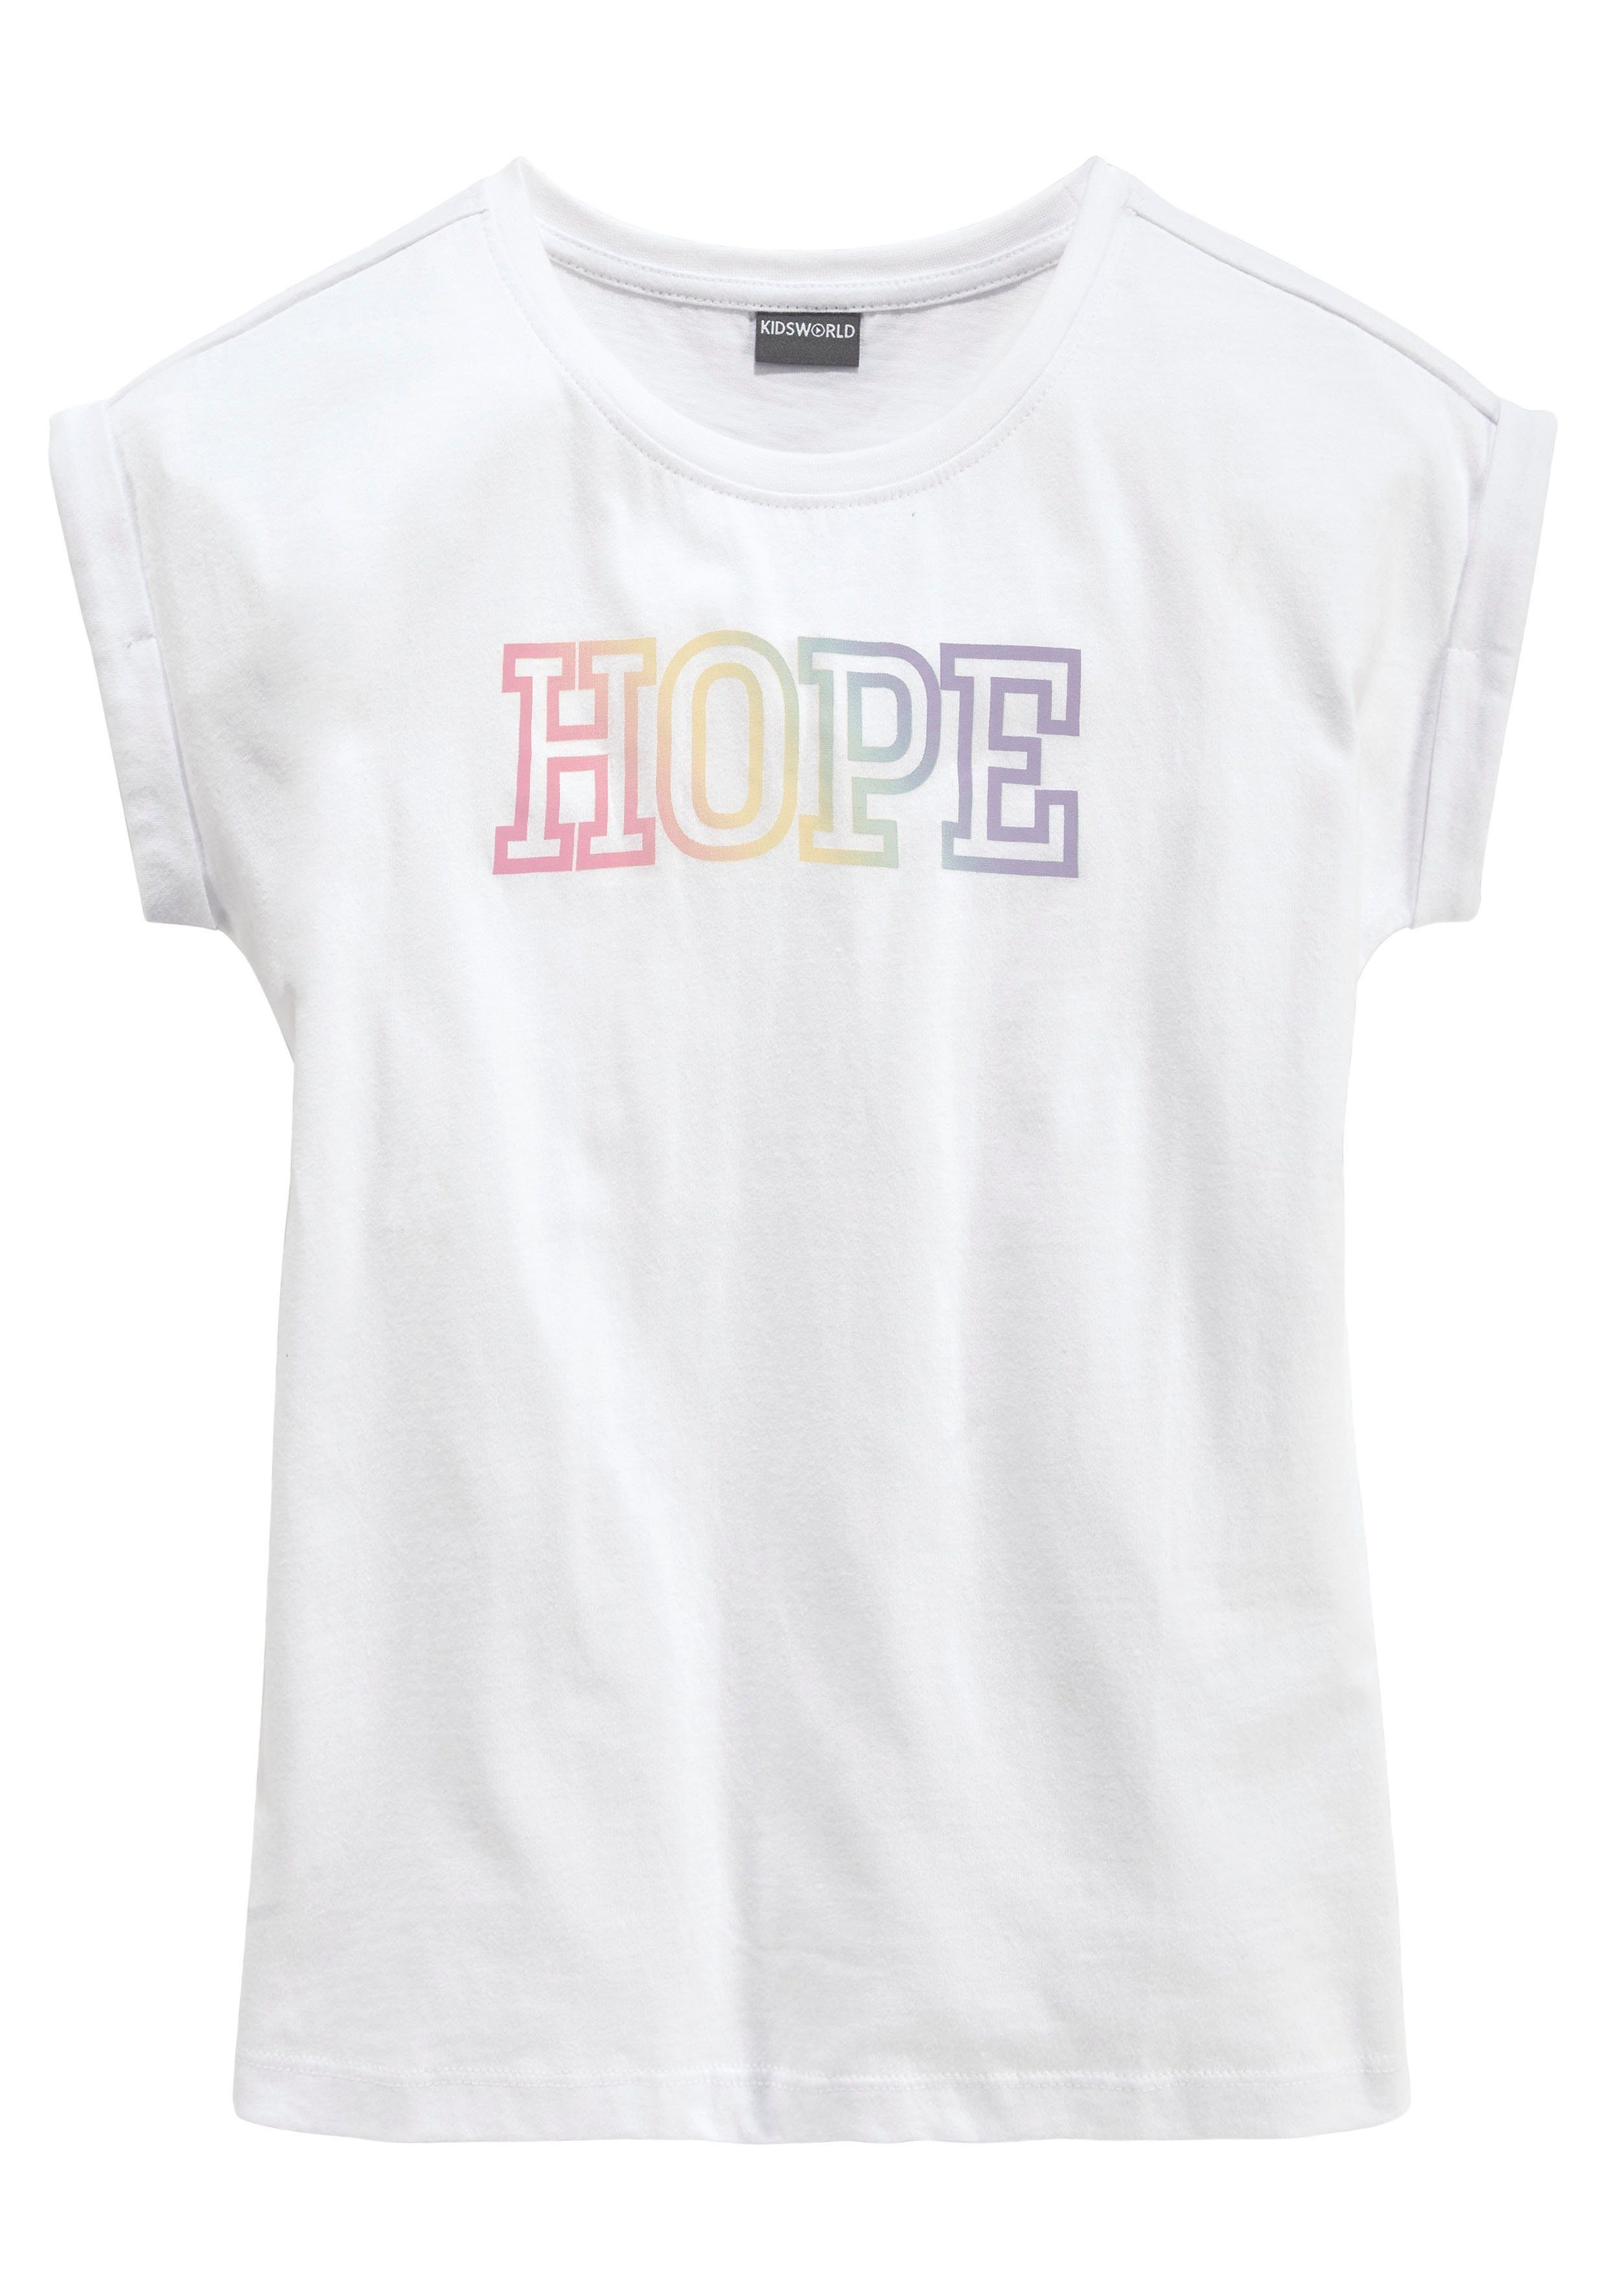 KIDSWORLD mit Statementdruck HOPE T-Shirt